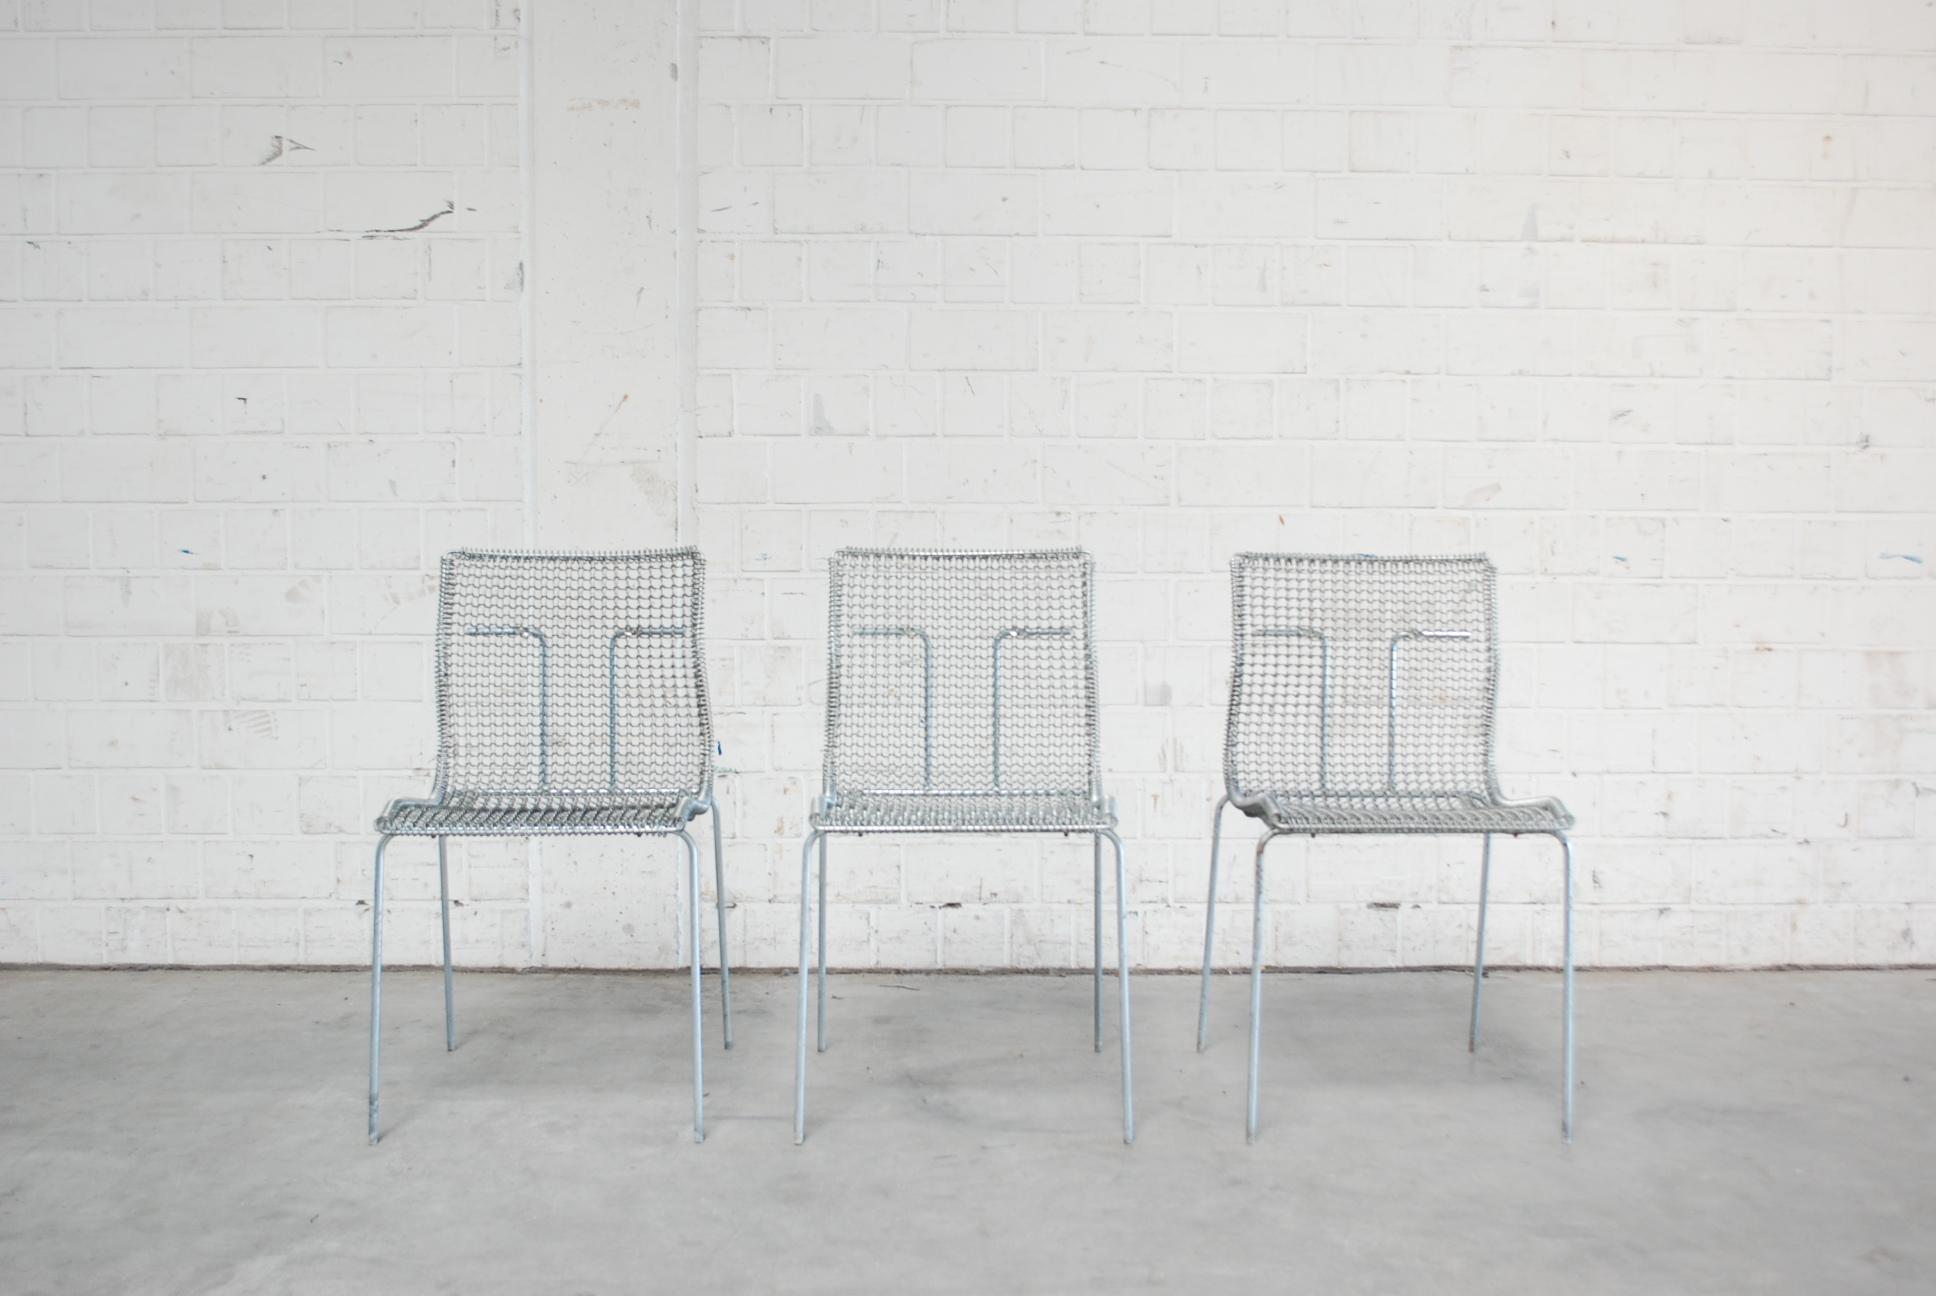 Cette chaise a été conçue par l'architecte et designer Niall O'Flynn pour le fabricant néerlandais spectrum en 1997.
Il a été produit pour une courte période de 4 ans.
Cette chaise est rare et constitue une pièce unique du design néerlandais.
Il